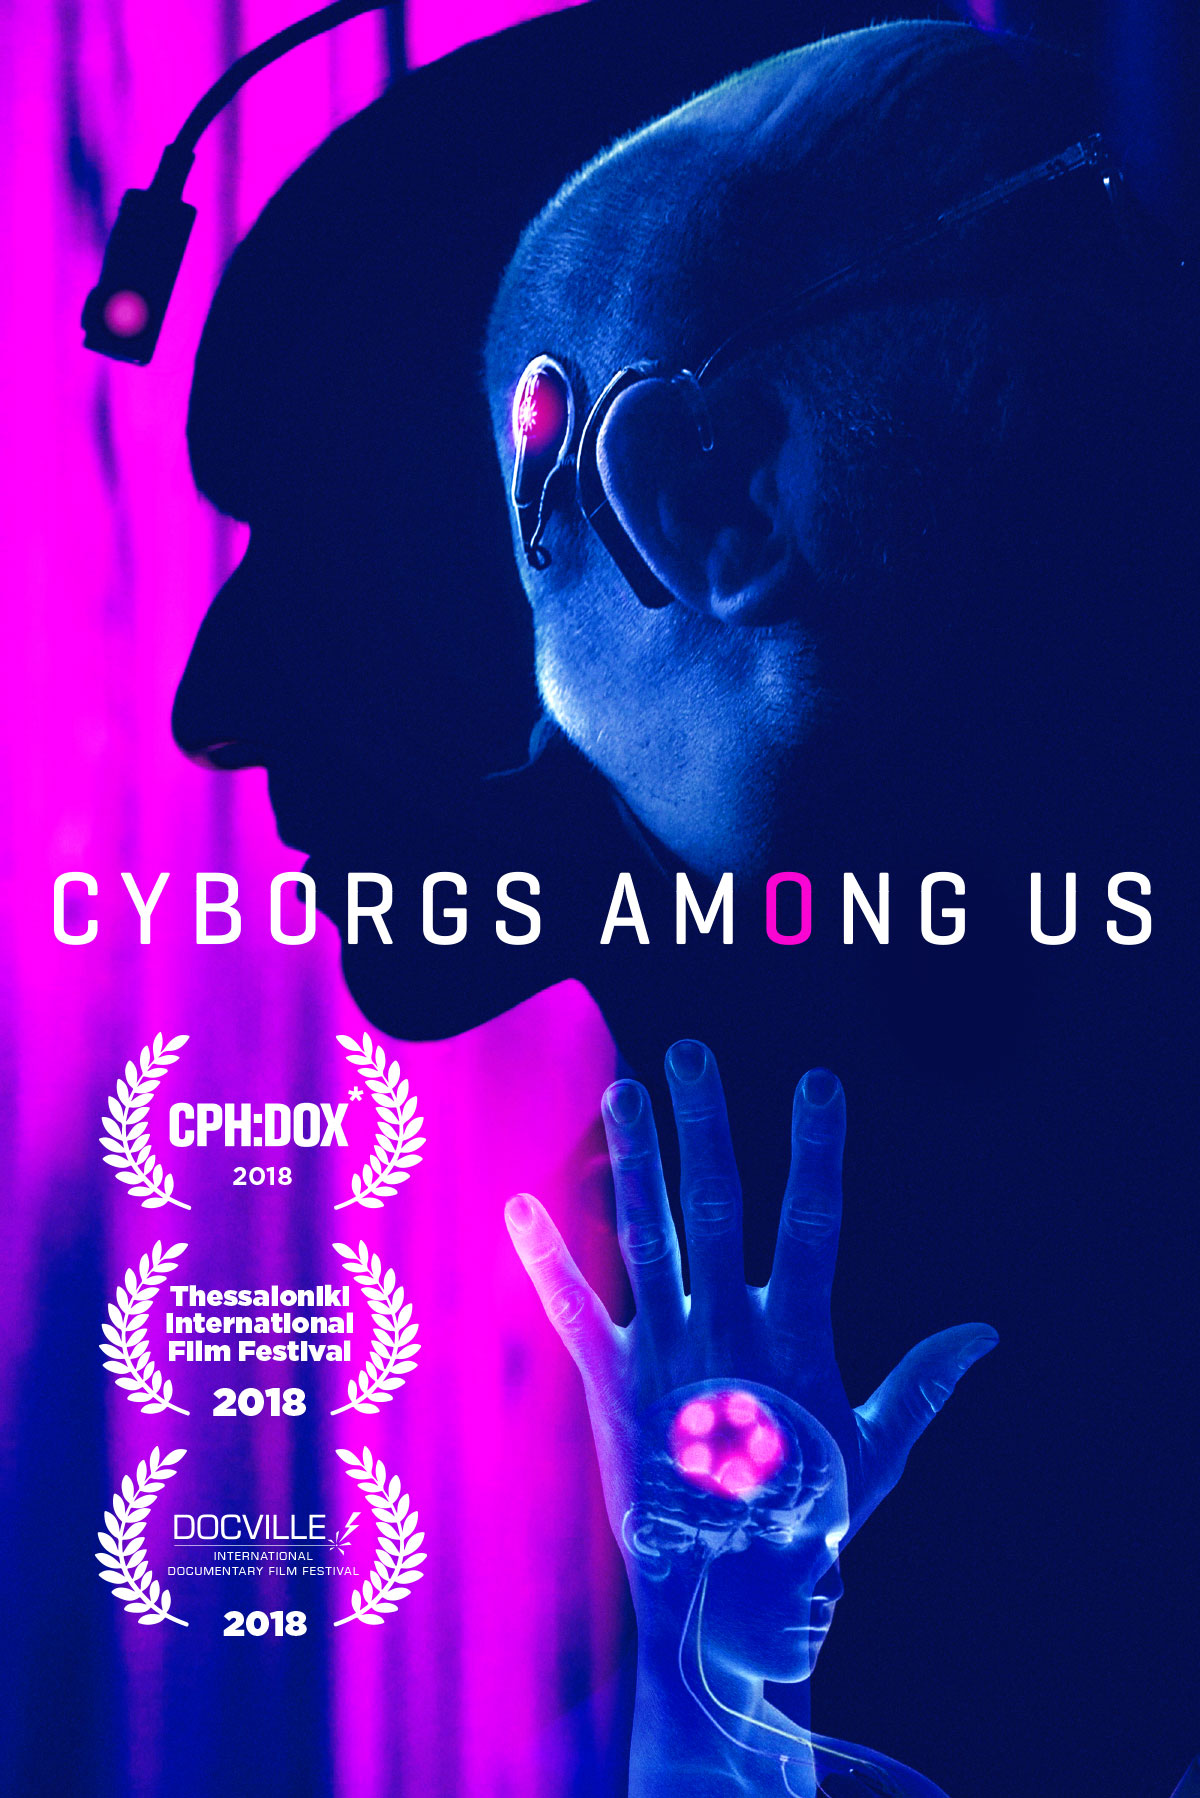 Cyborgs Among Us